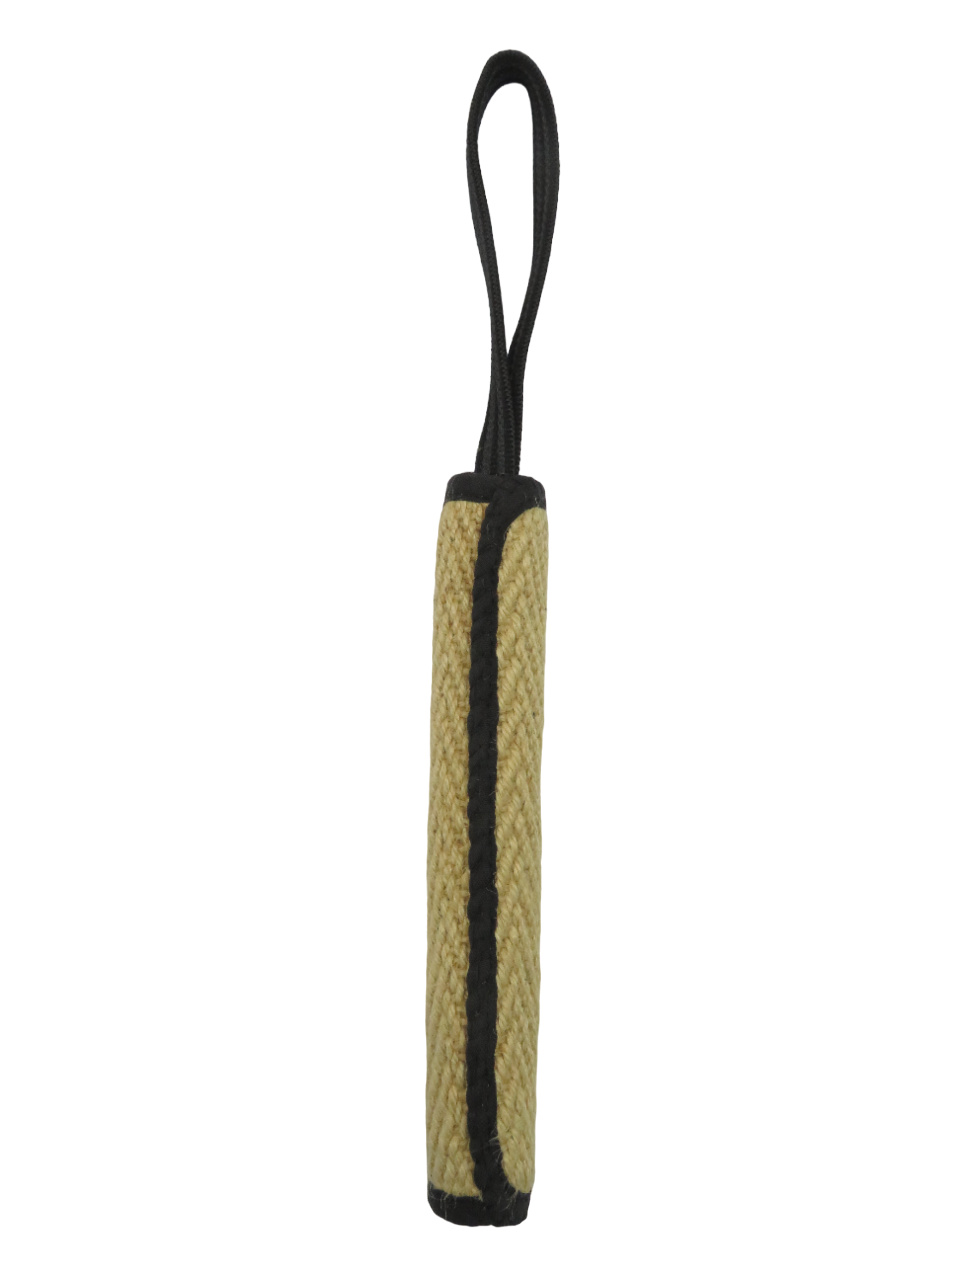 BOW WOW BOW WOW джутовая палка с 9-миллиметровой прорезиненной ручкой (натуральная) (120 г) bow wow bow wow мяч джутовый с прорезиненной ручкой натуральный 240 г